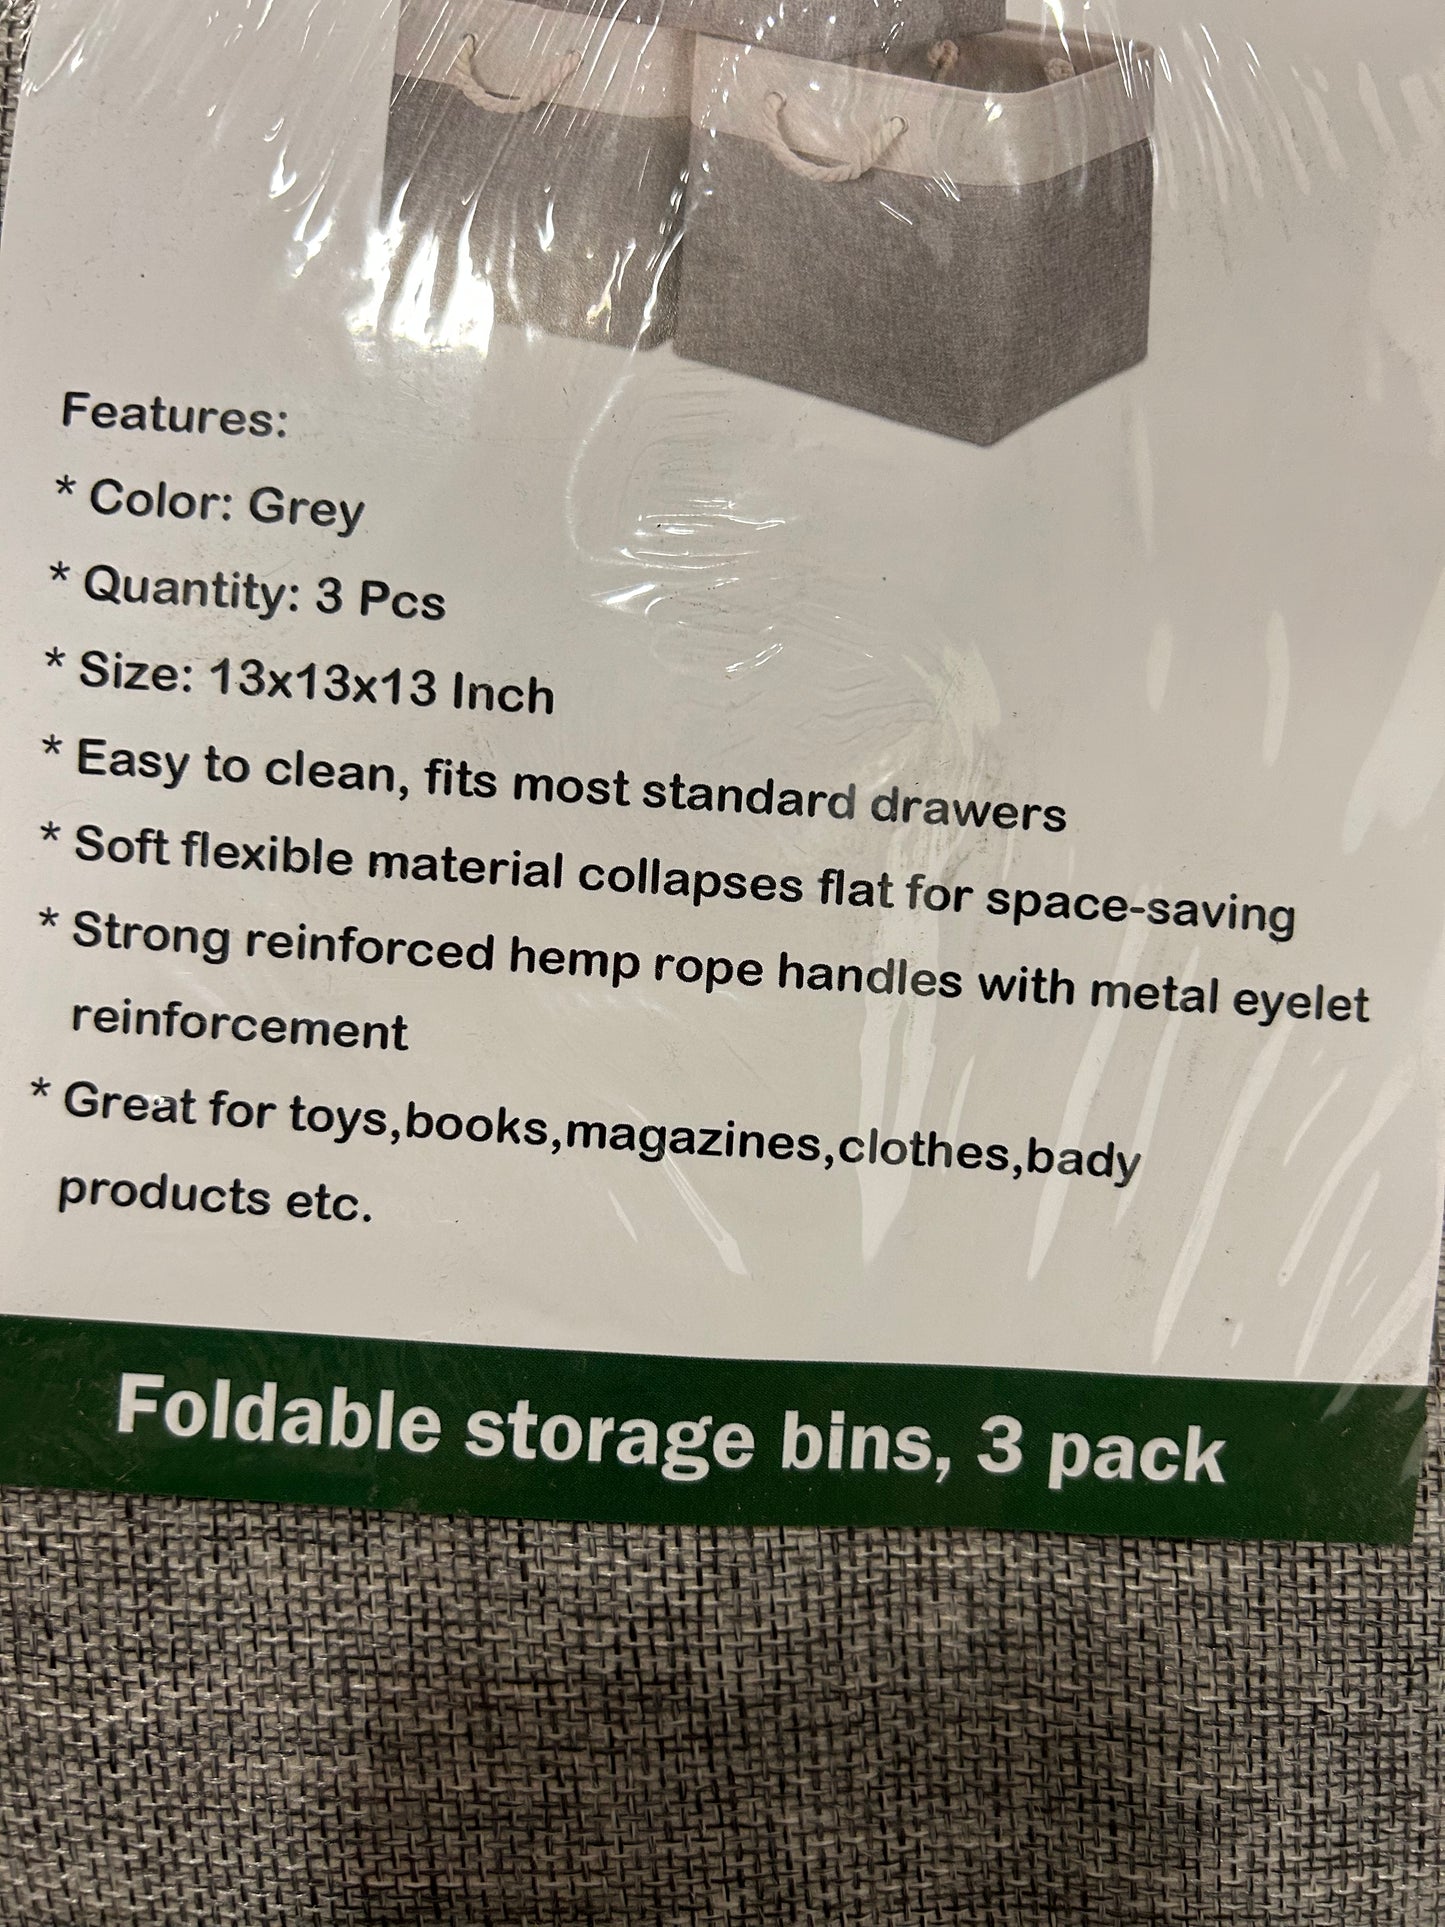 Foldable bin